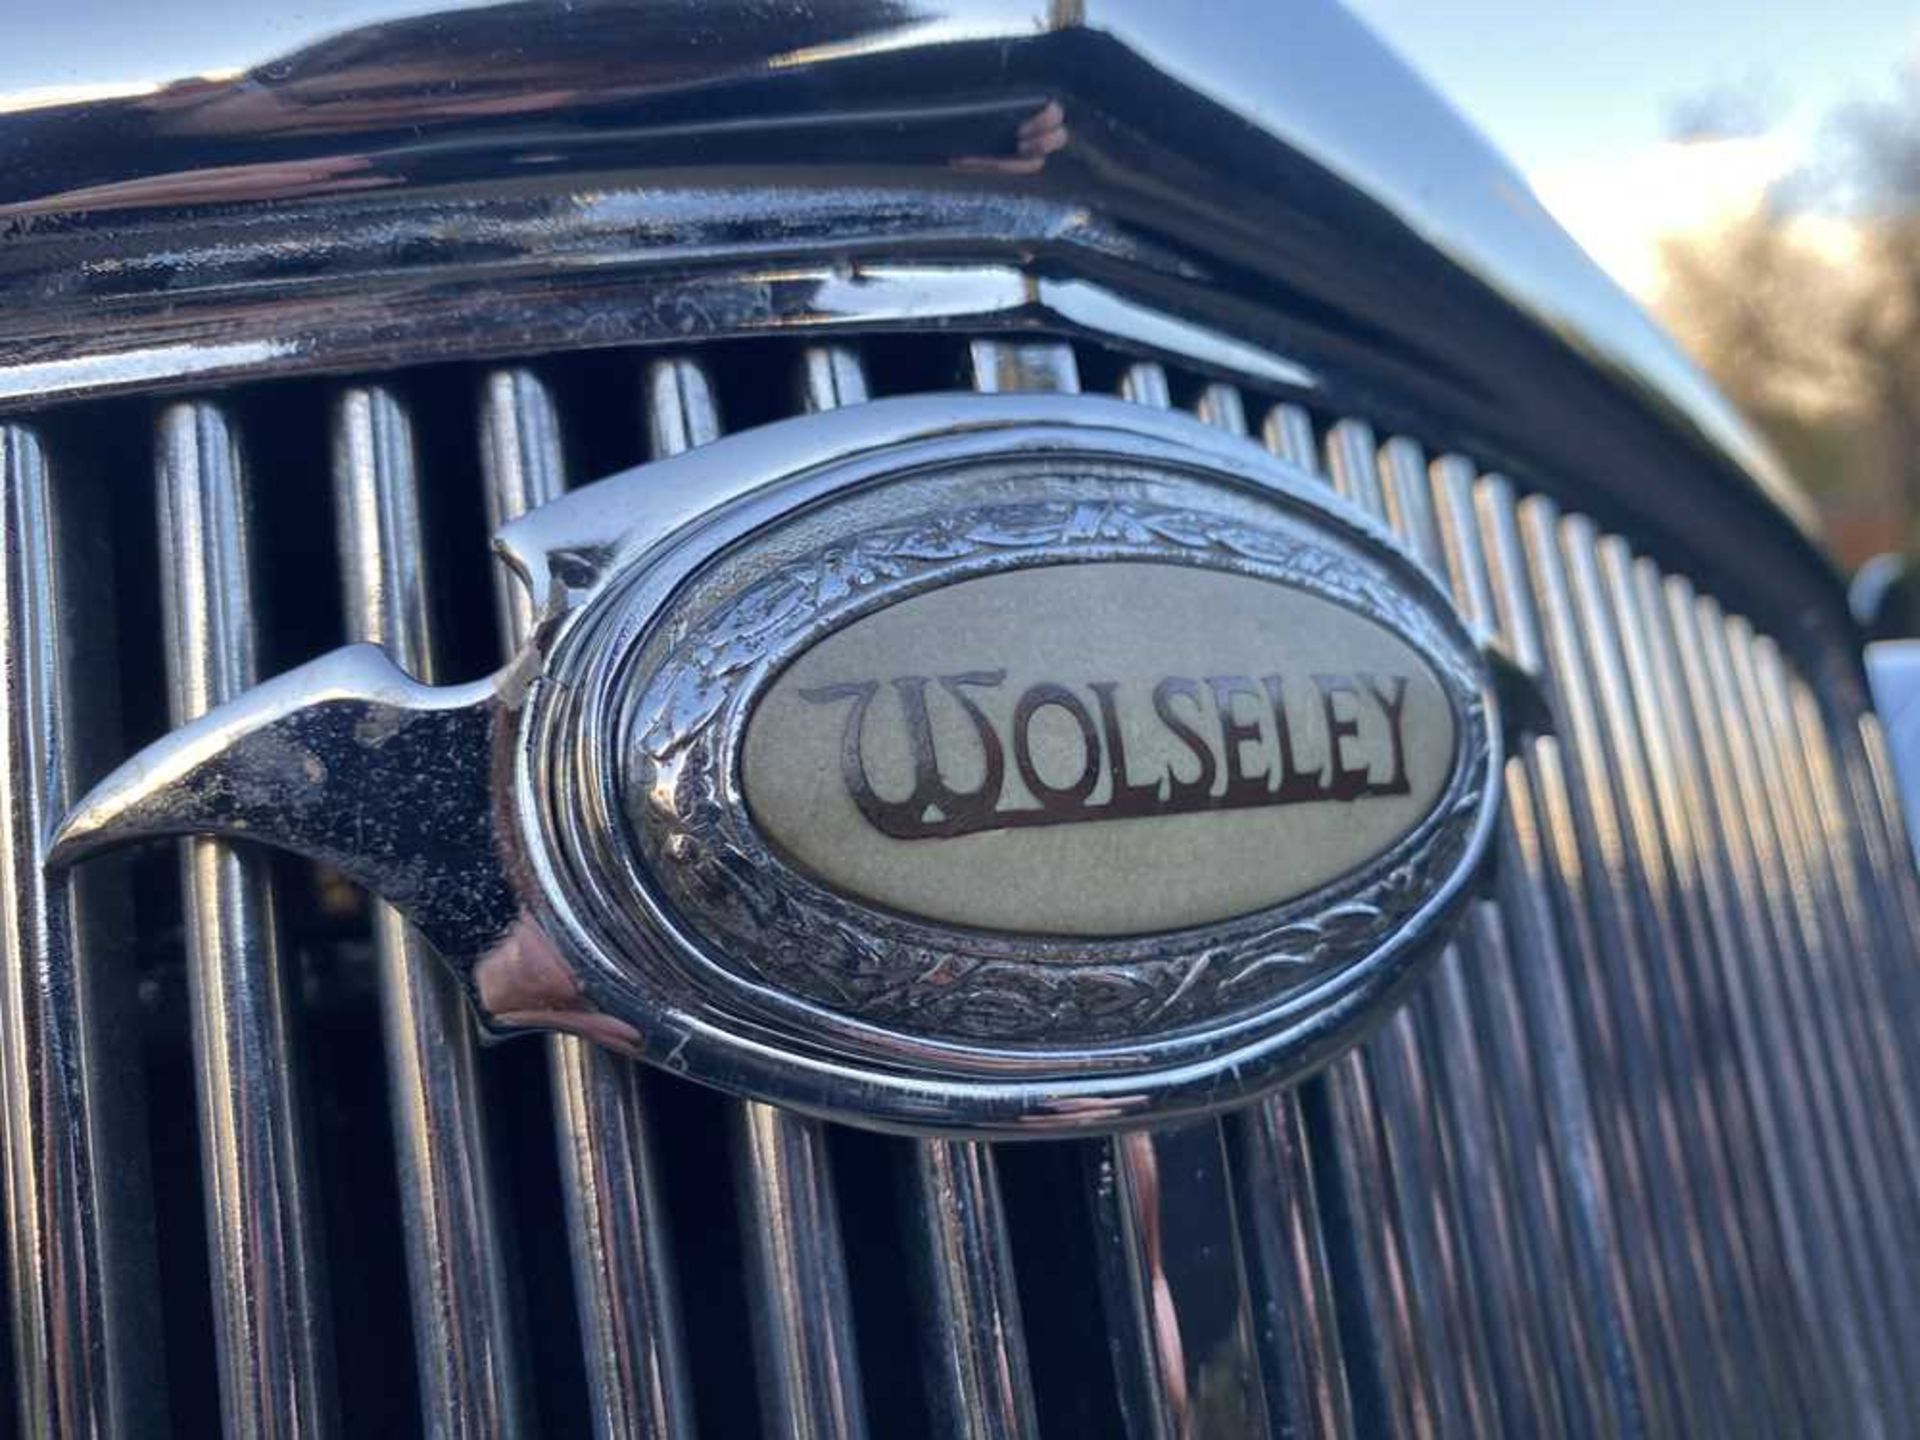 1947 Wolseley 10 Saloon - Image 37 of 73